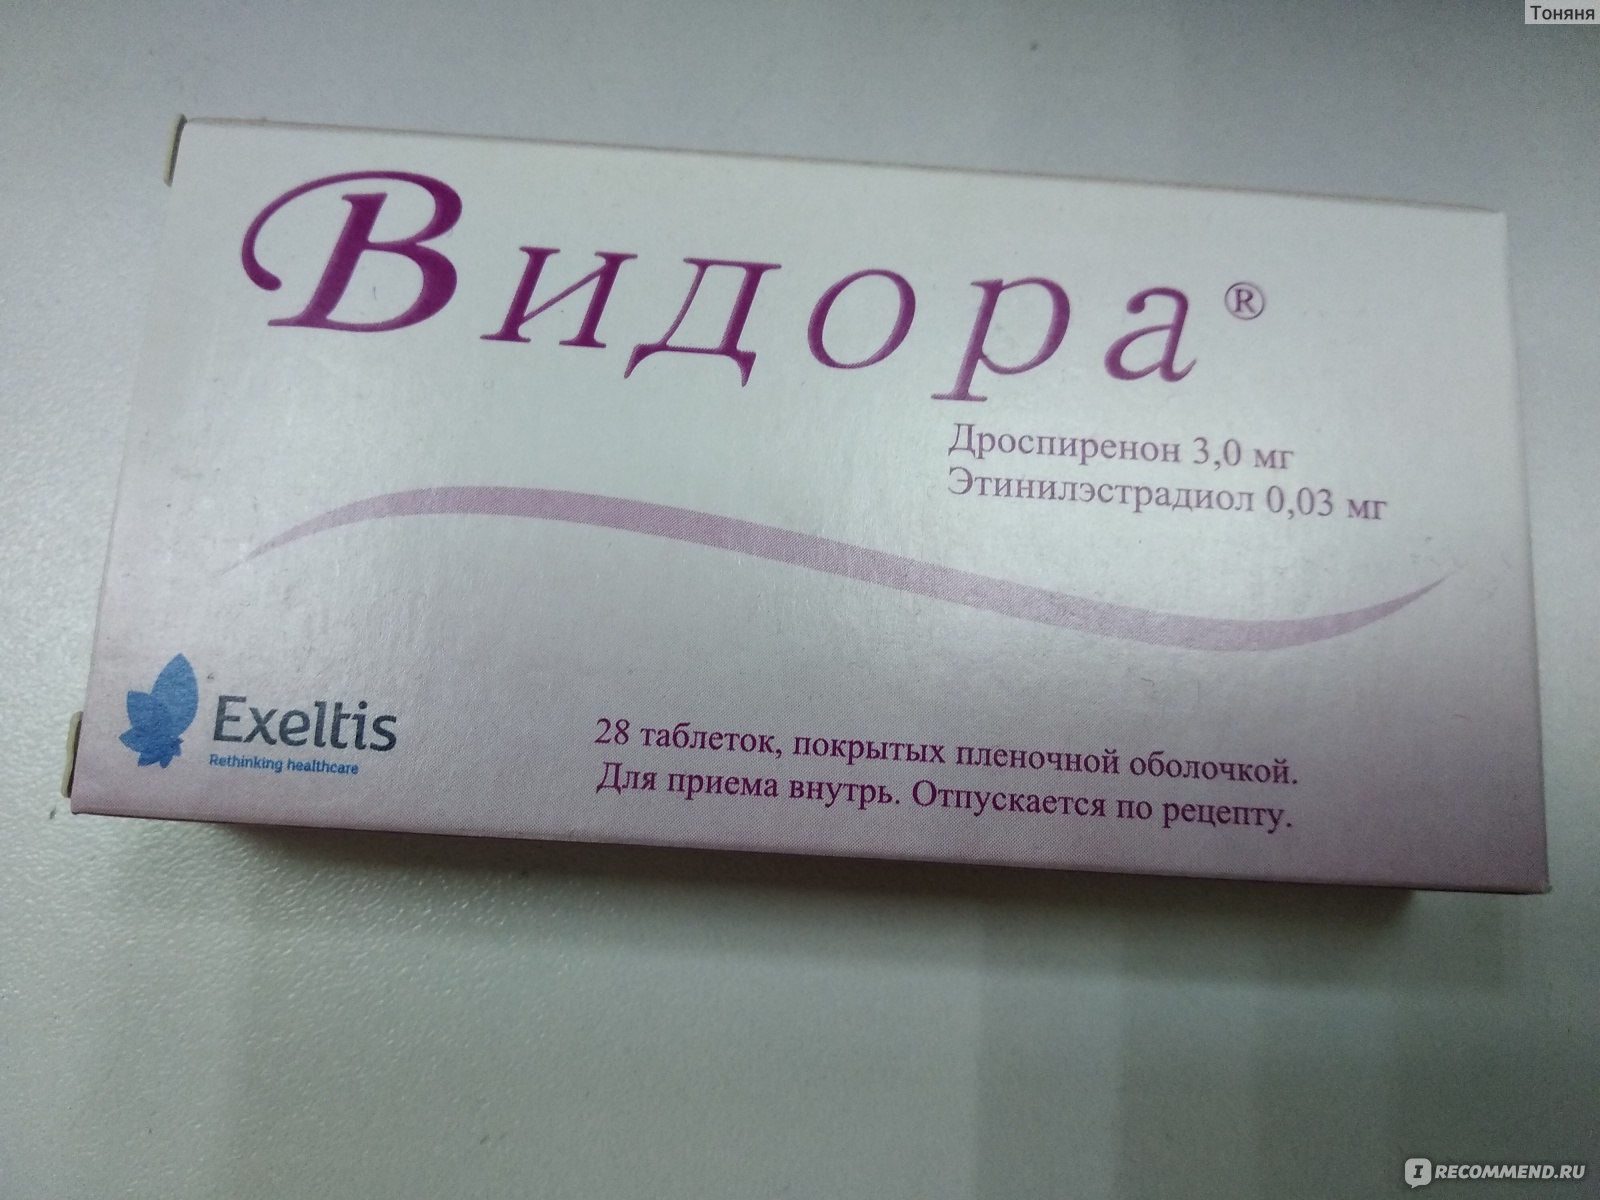 Видора цена. Противозачаточные Видора. Видора противозачаточный препарат. Таблетки контрацептивы Видора 21+7. Видора таблетки, покрытые пленочной оболочкой.